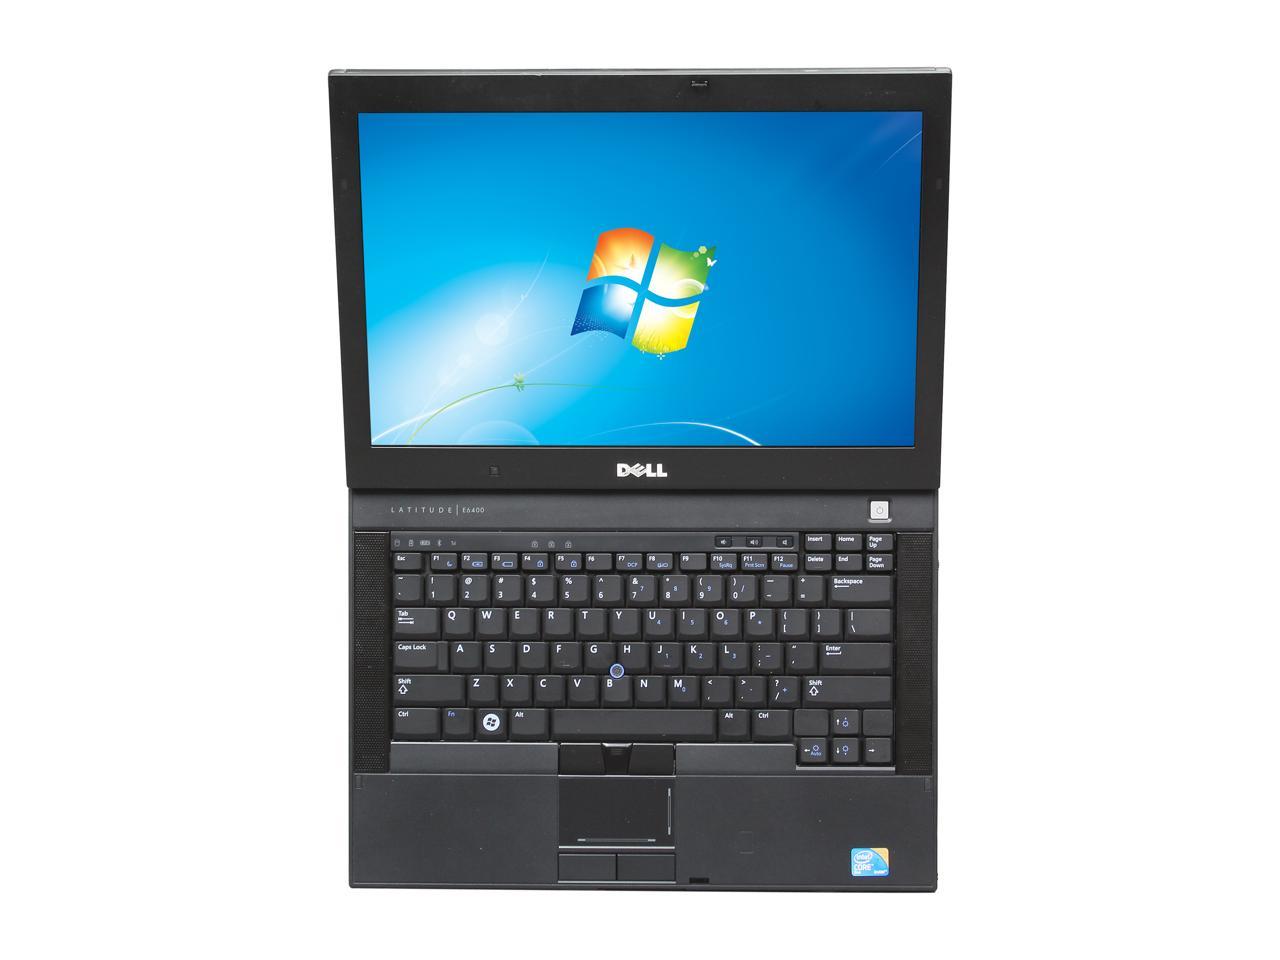 Refurbished: DELL Laptop Latitude E6400 Intel Core 2 Duo 2.60 GHz 4 GB